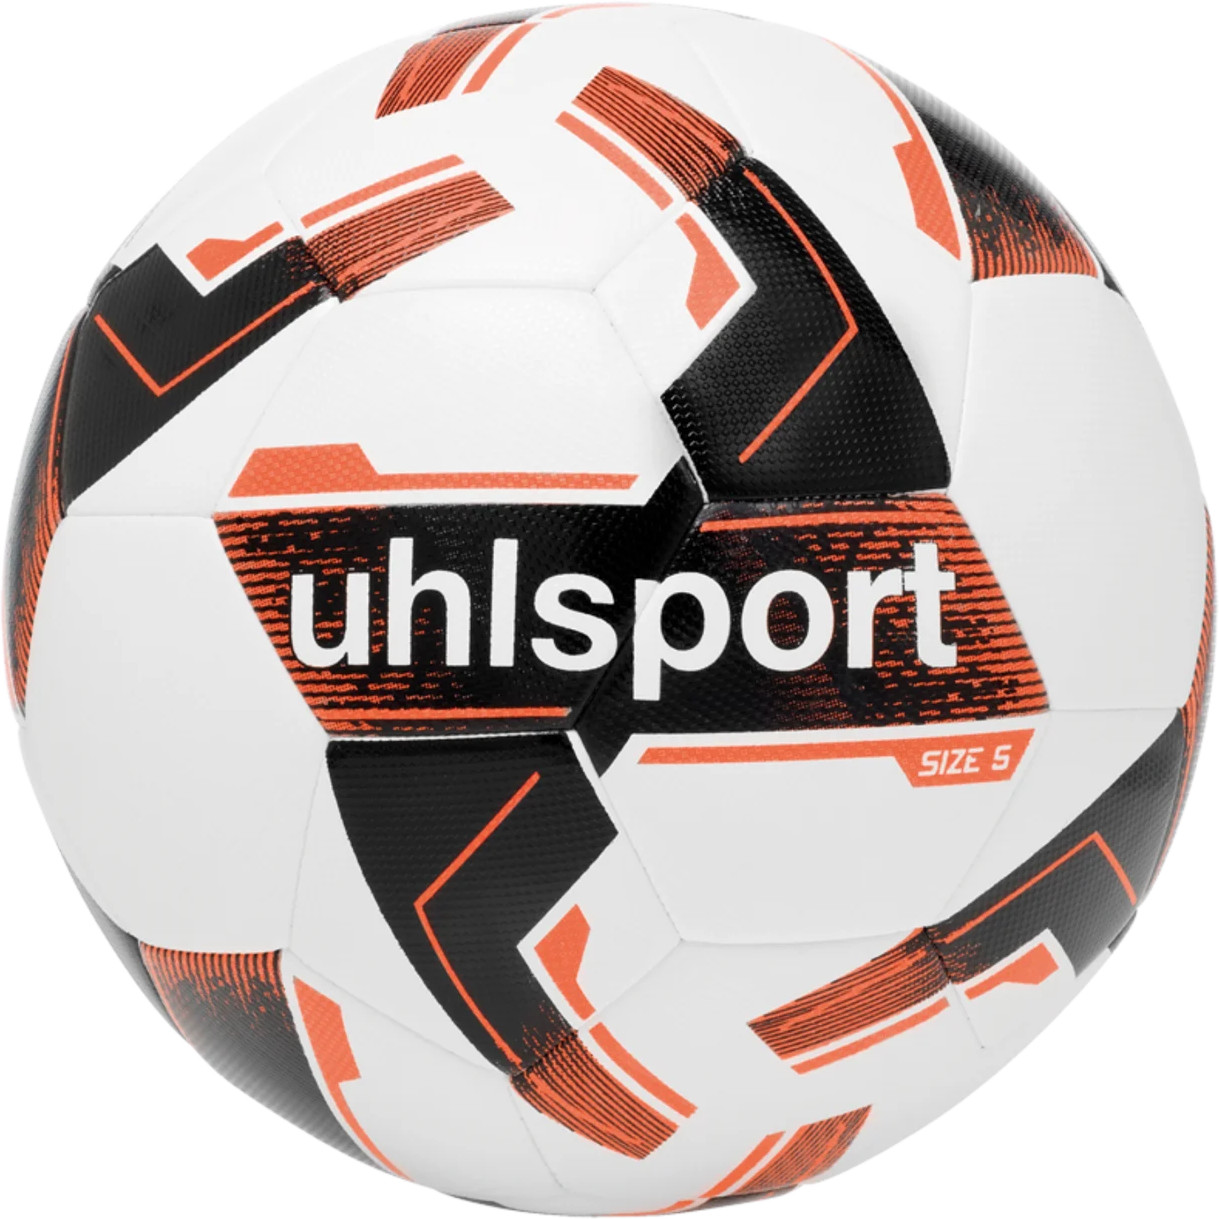 Minge Uhlsport Resist Synergy Trainingsball